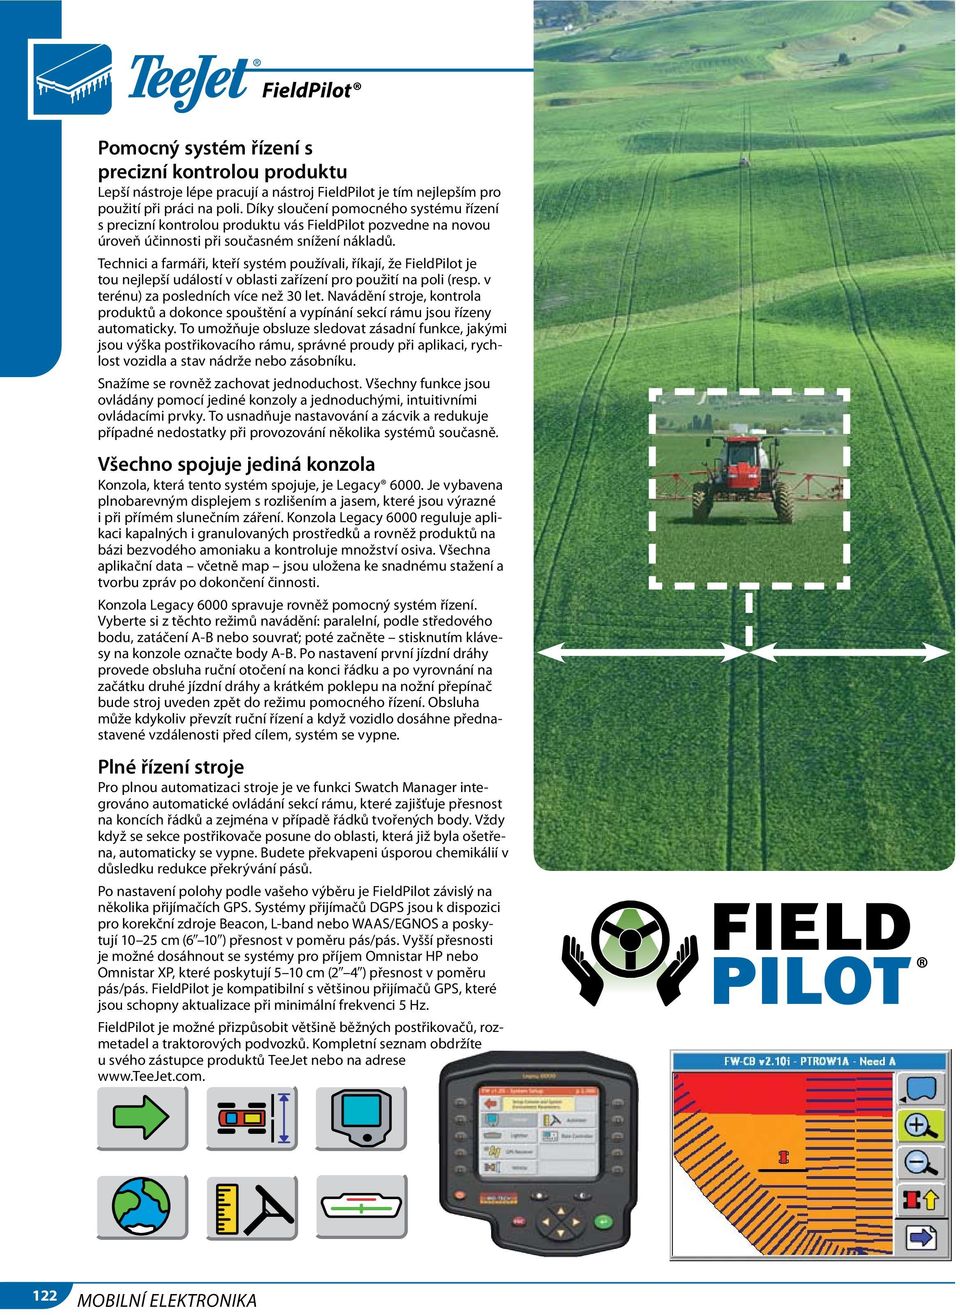 Technici a farmáři, kteří systém používali, říkají, že FieldPilot je tou nejlepší událostí v oblasti zařízení pro použití na poli (resp. v terénu) za posledních více než 30 let.